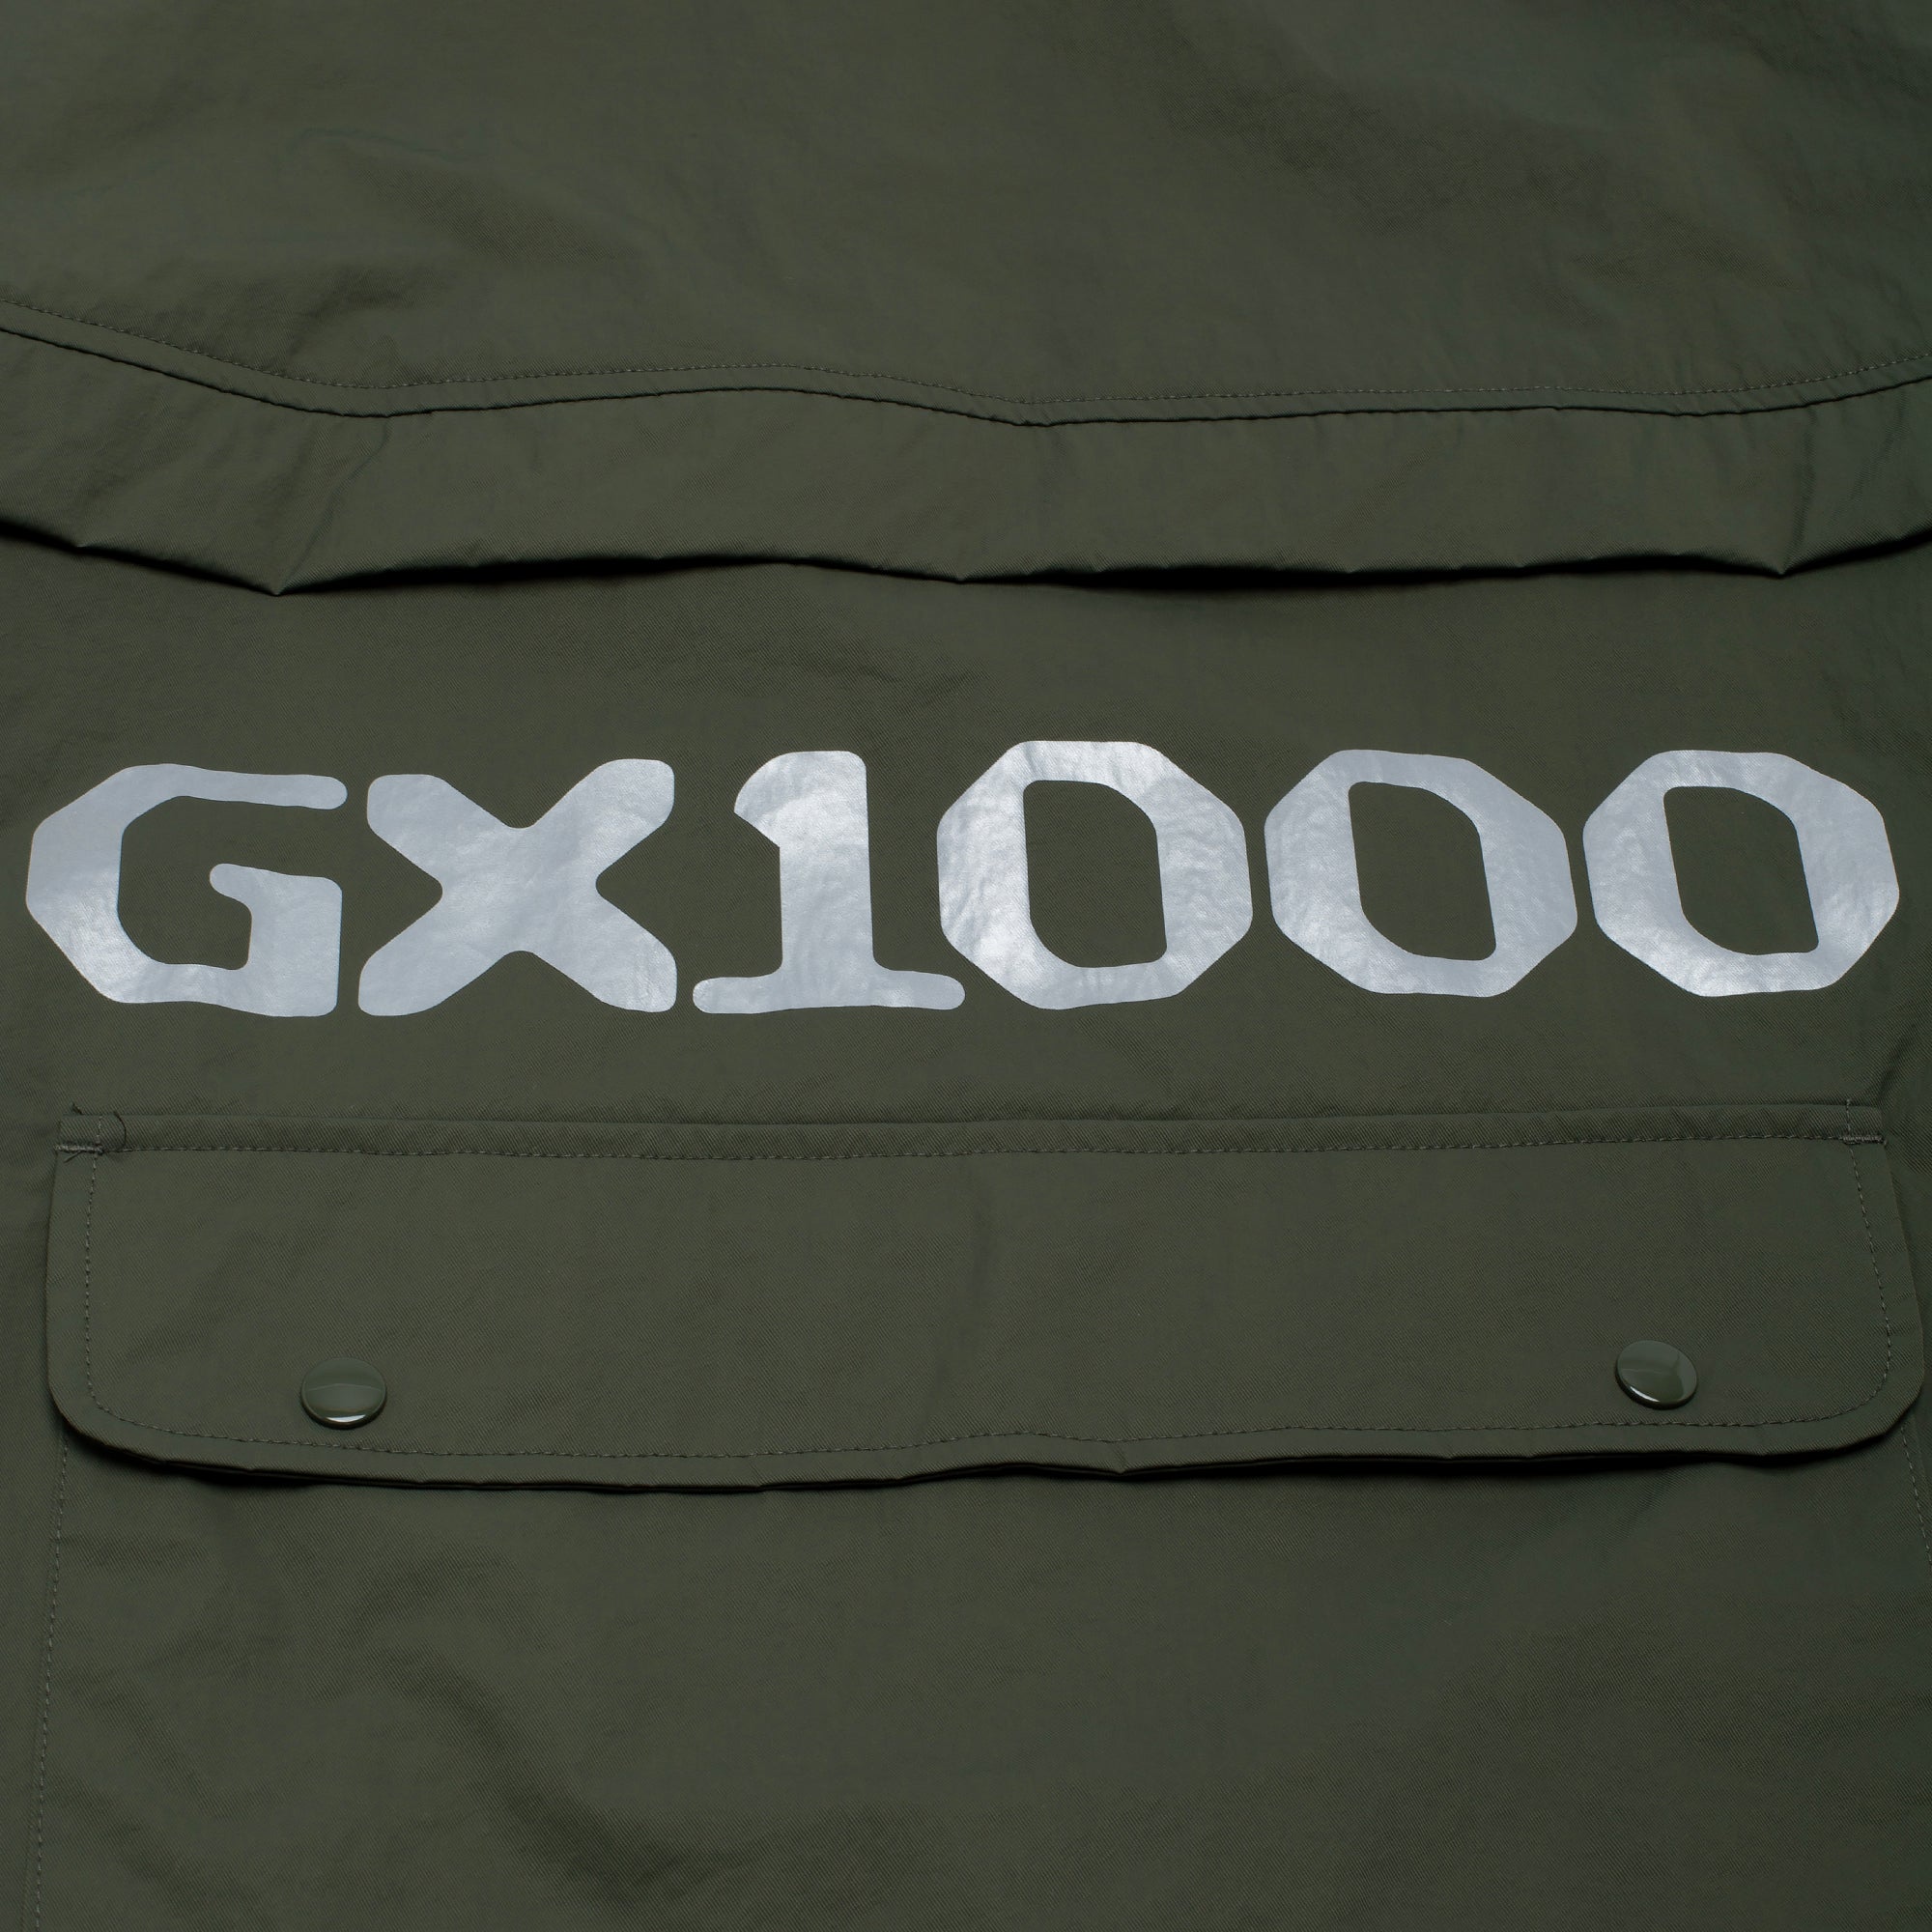 GX1000 - Anorak Jacket "Olive"